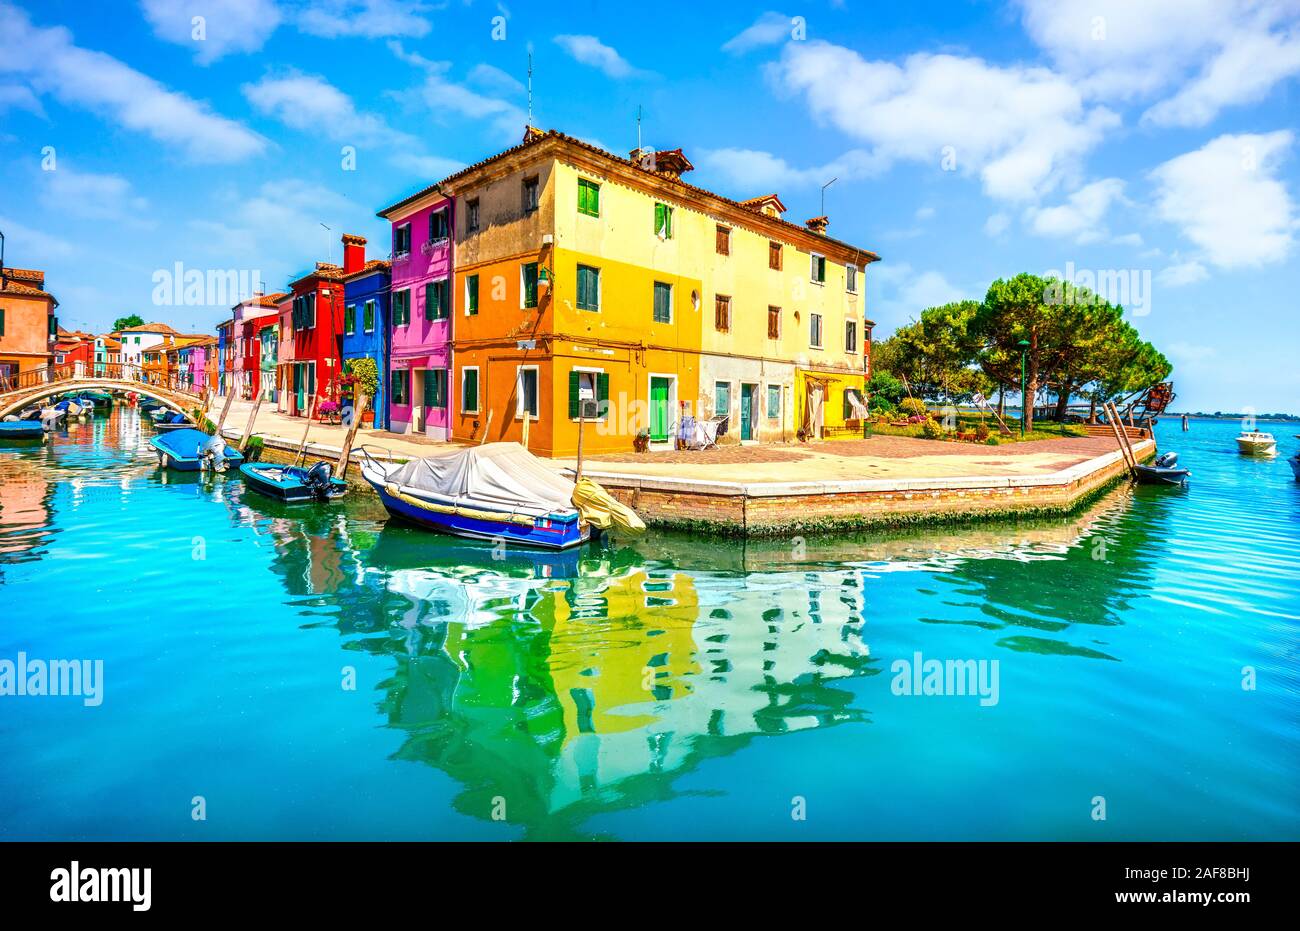 Vue de Venise, Burano island canal, maisons colorées et des bateaux, l'Italie, l'Europe. Banque D'Images